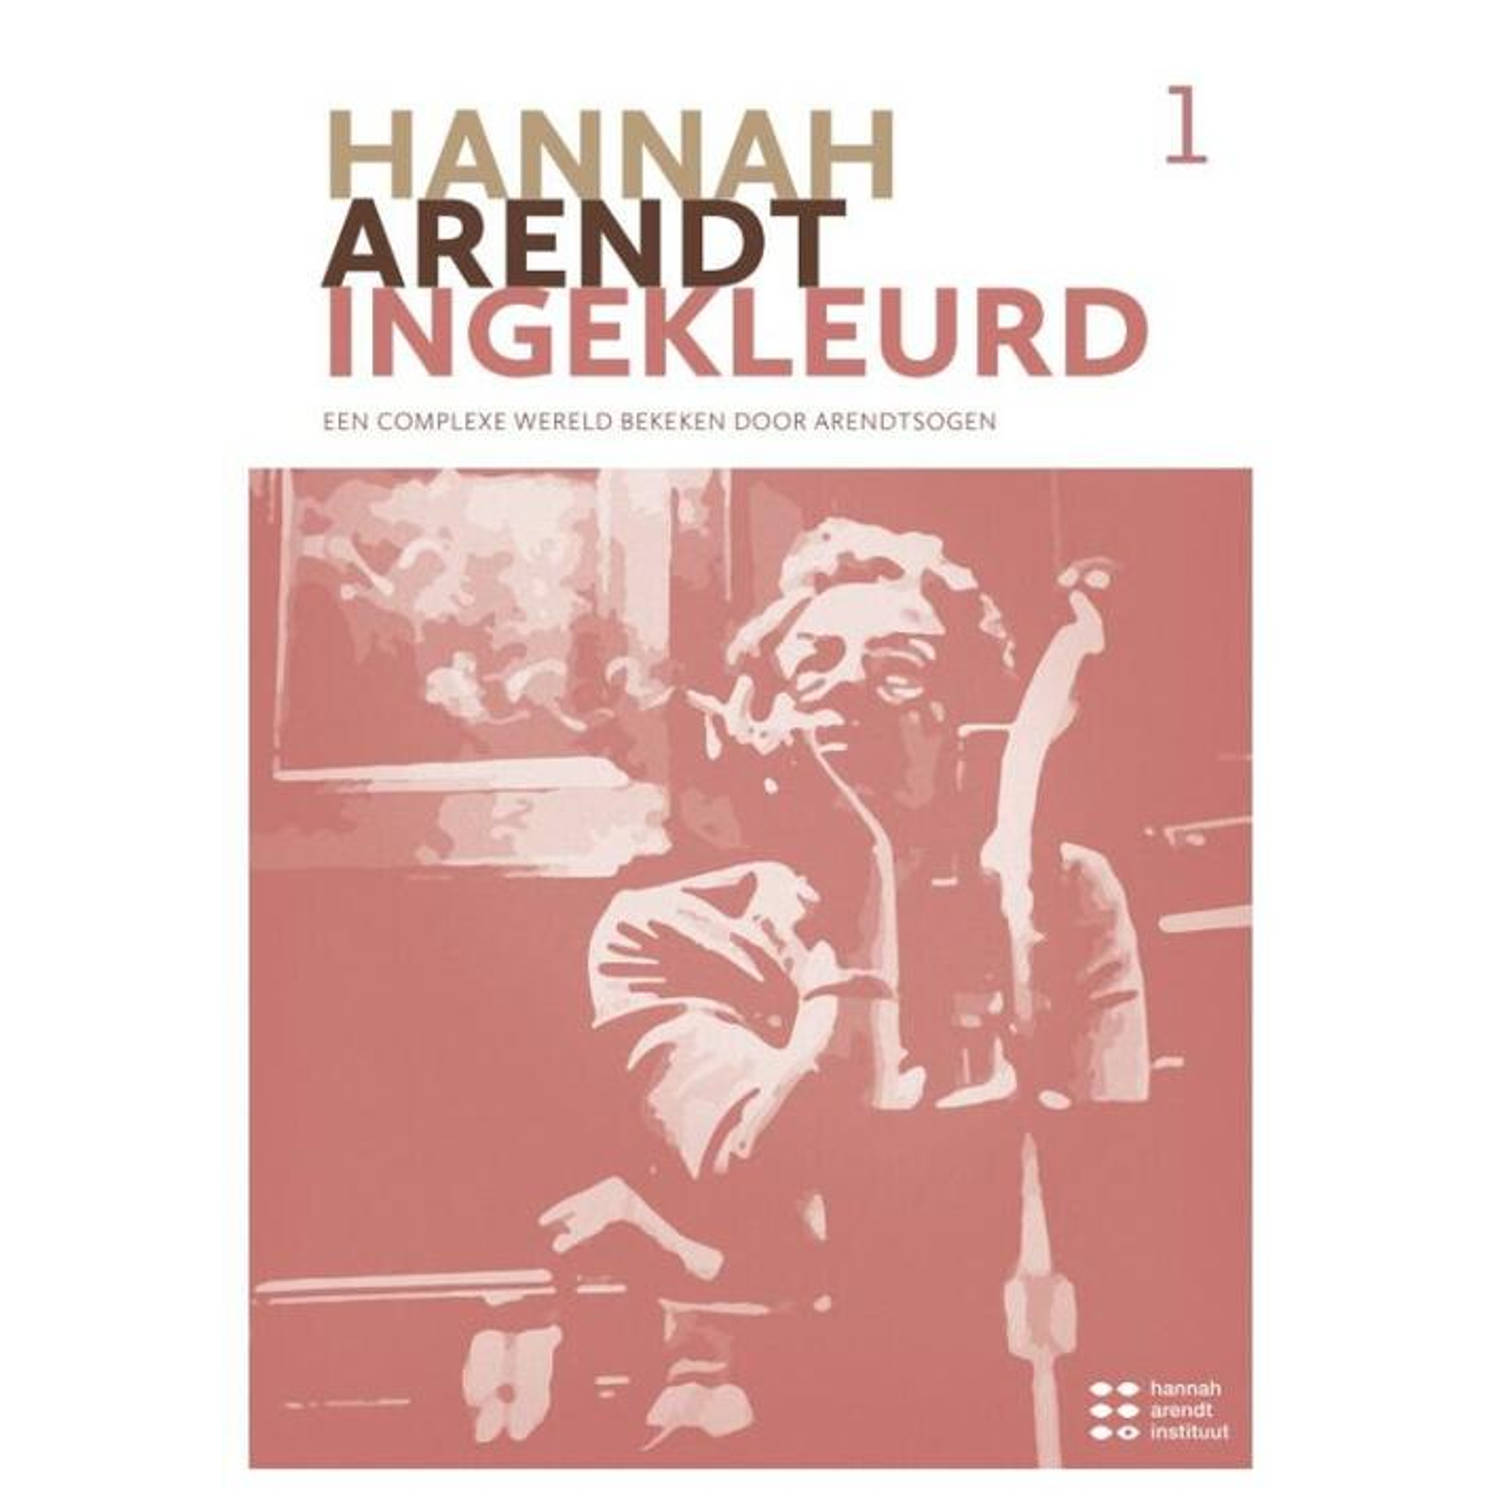 Hannah Arendt Ingekleurd I